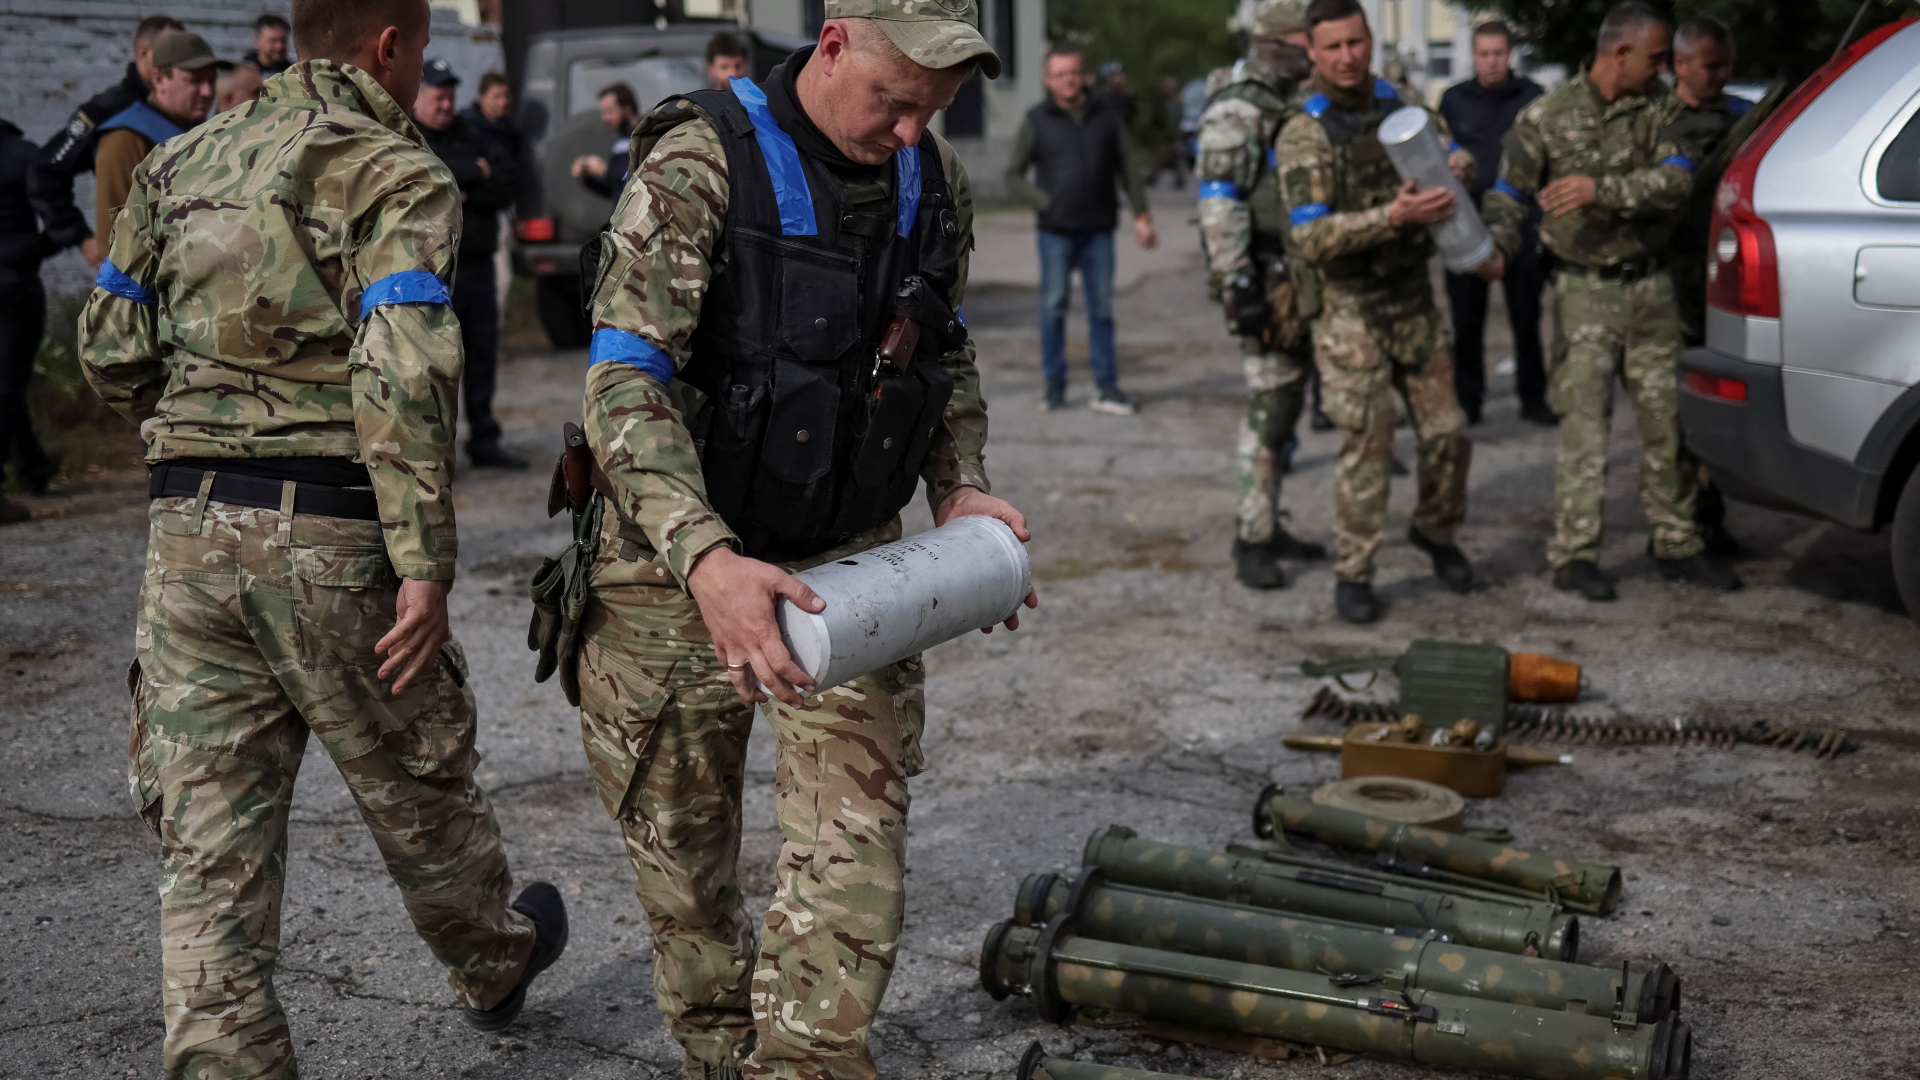 Ukrainische Soldaten sortieren Munition und Waffen, die von russischen Soldaten zurückgelassen worden sein sollen. | REUTERS